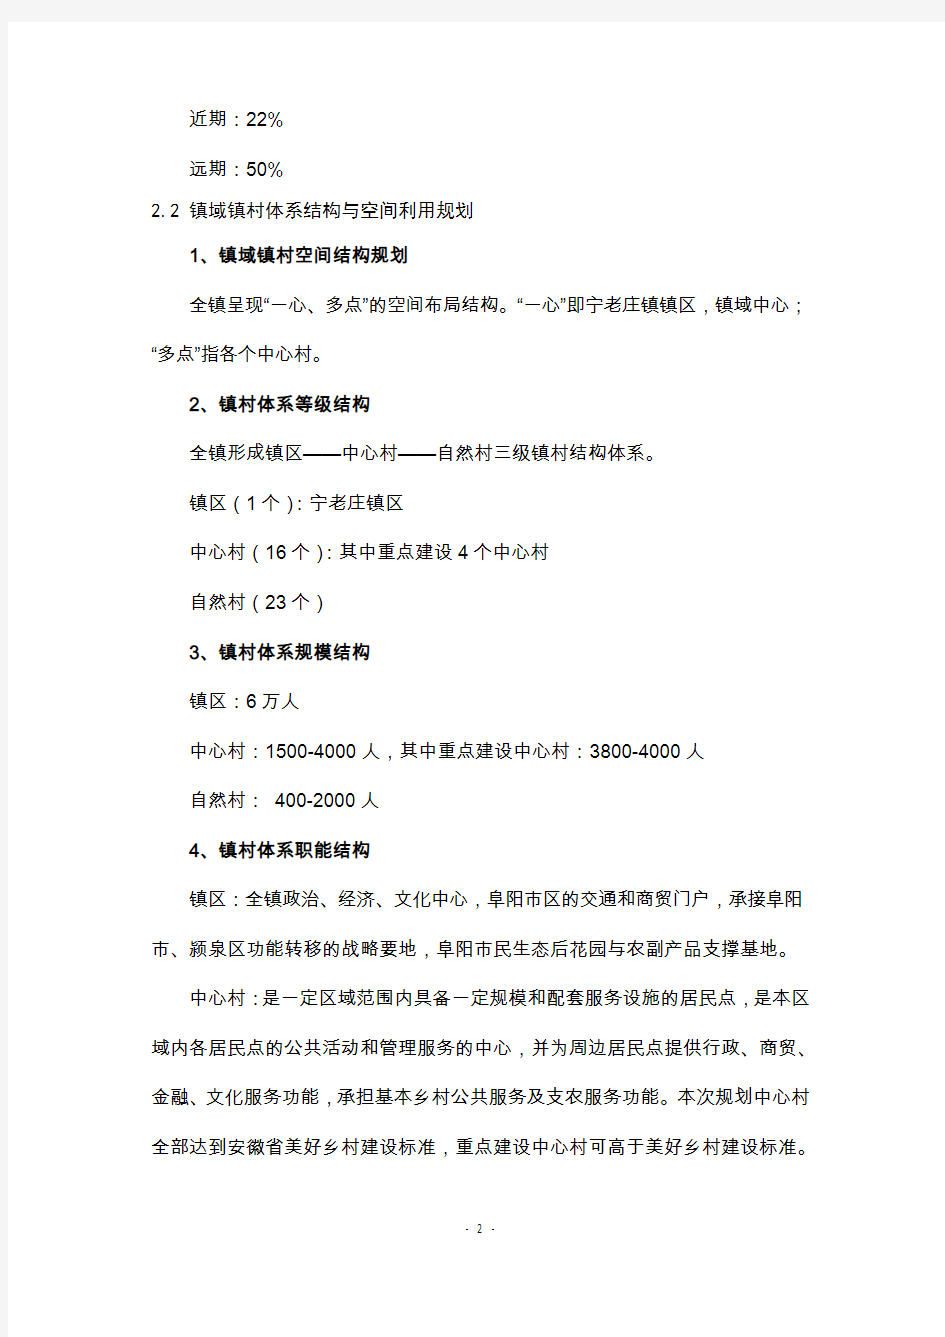 《阜阳市宁老庄镇总体规划(2013—2030)》主要内容